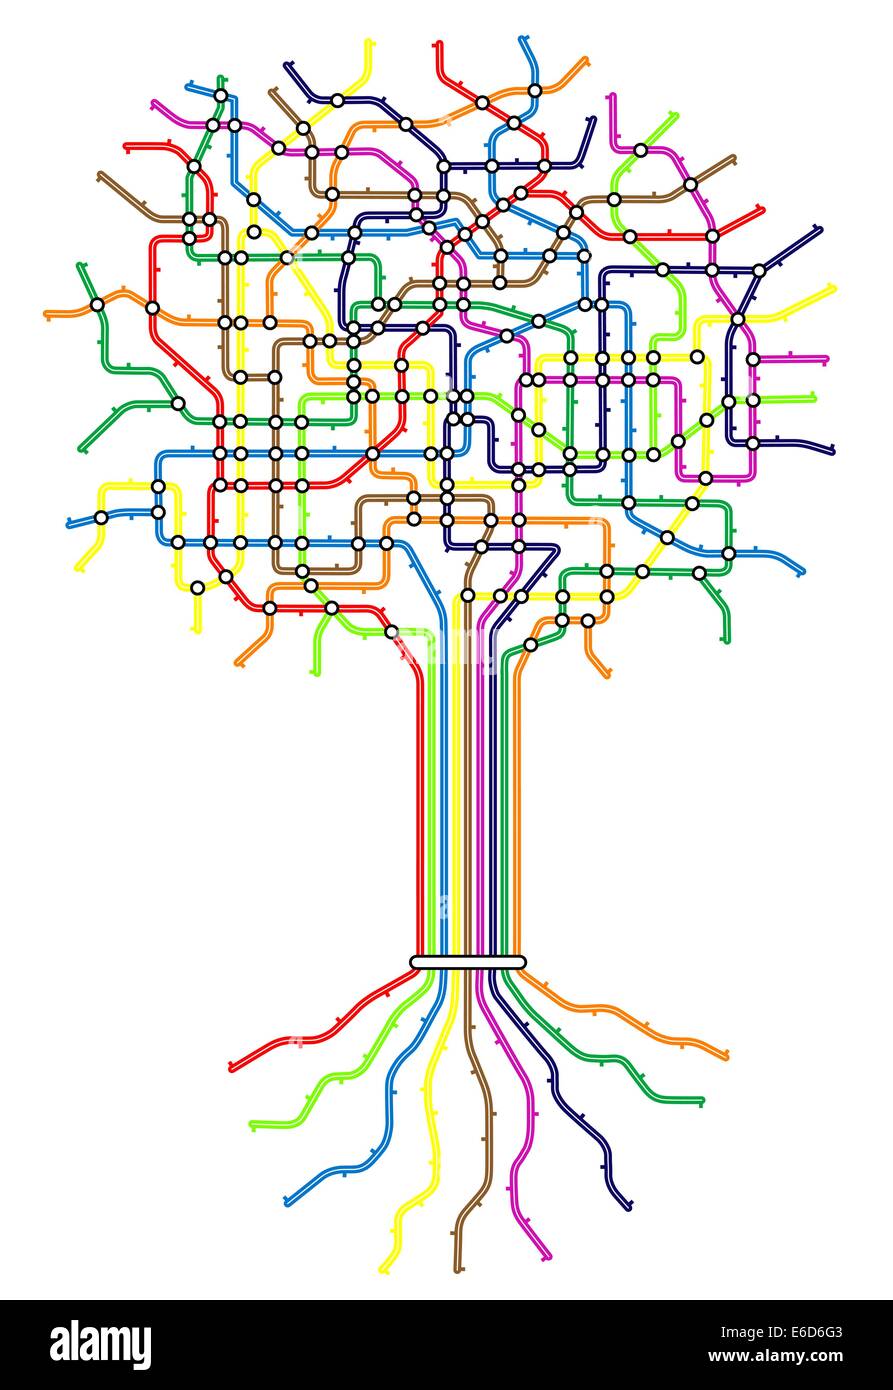 Baum Diagramm Stockfotos & Baum Diagramm Bilder Alamy